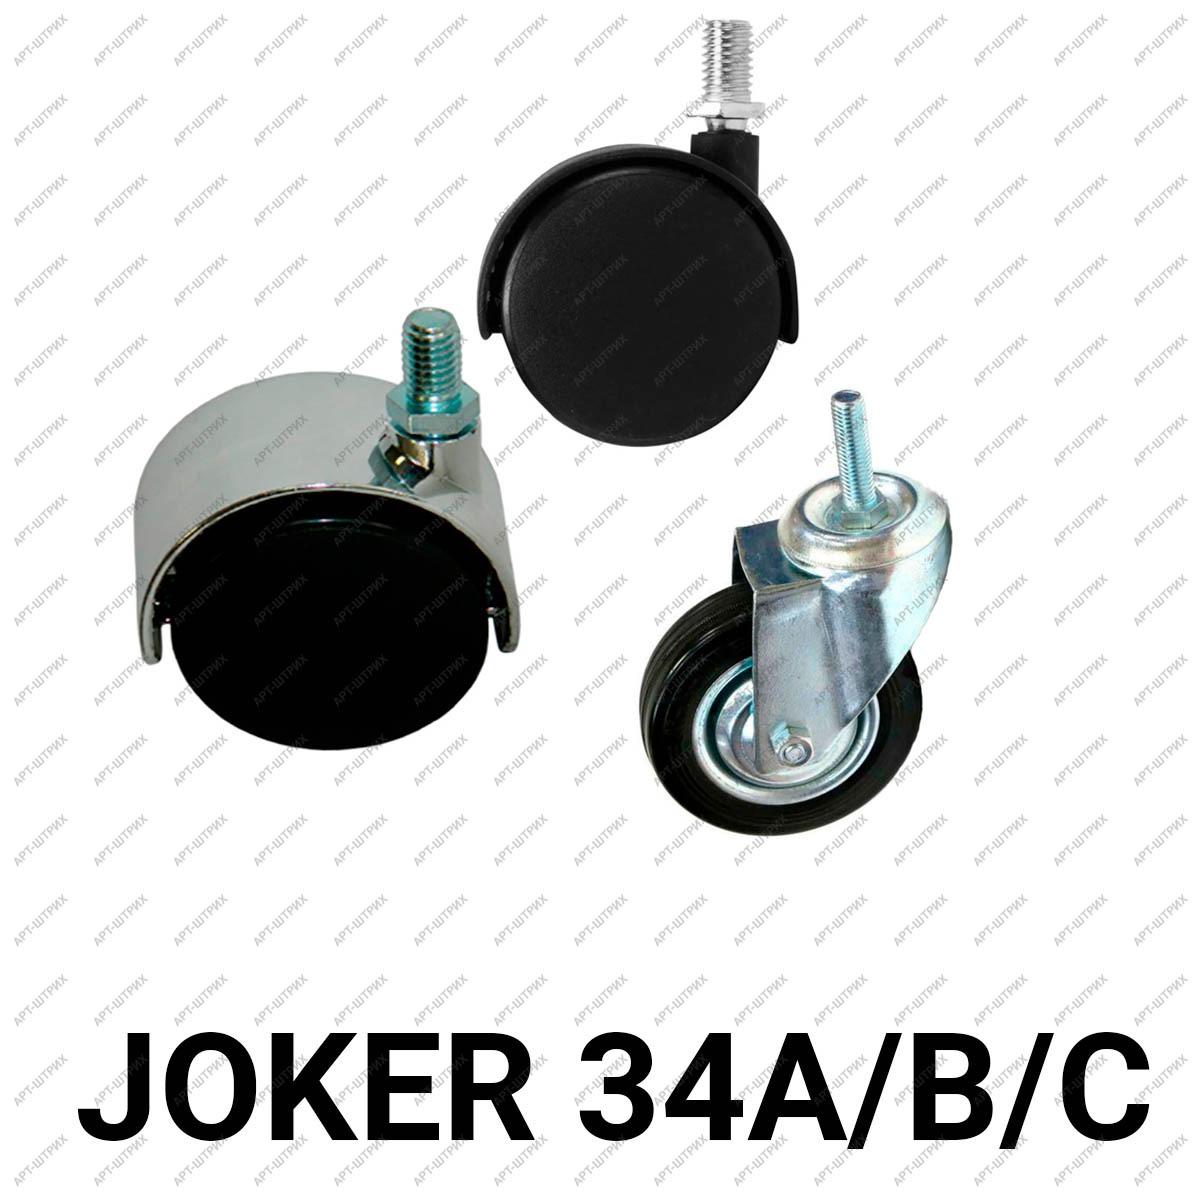 Joker 34 Колесная опора (A, B, C)